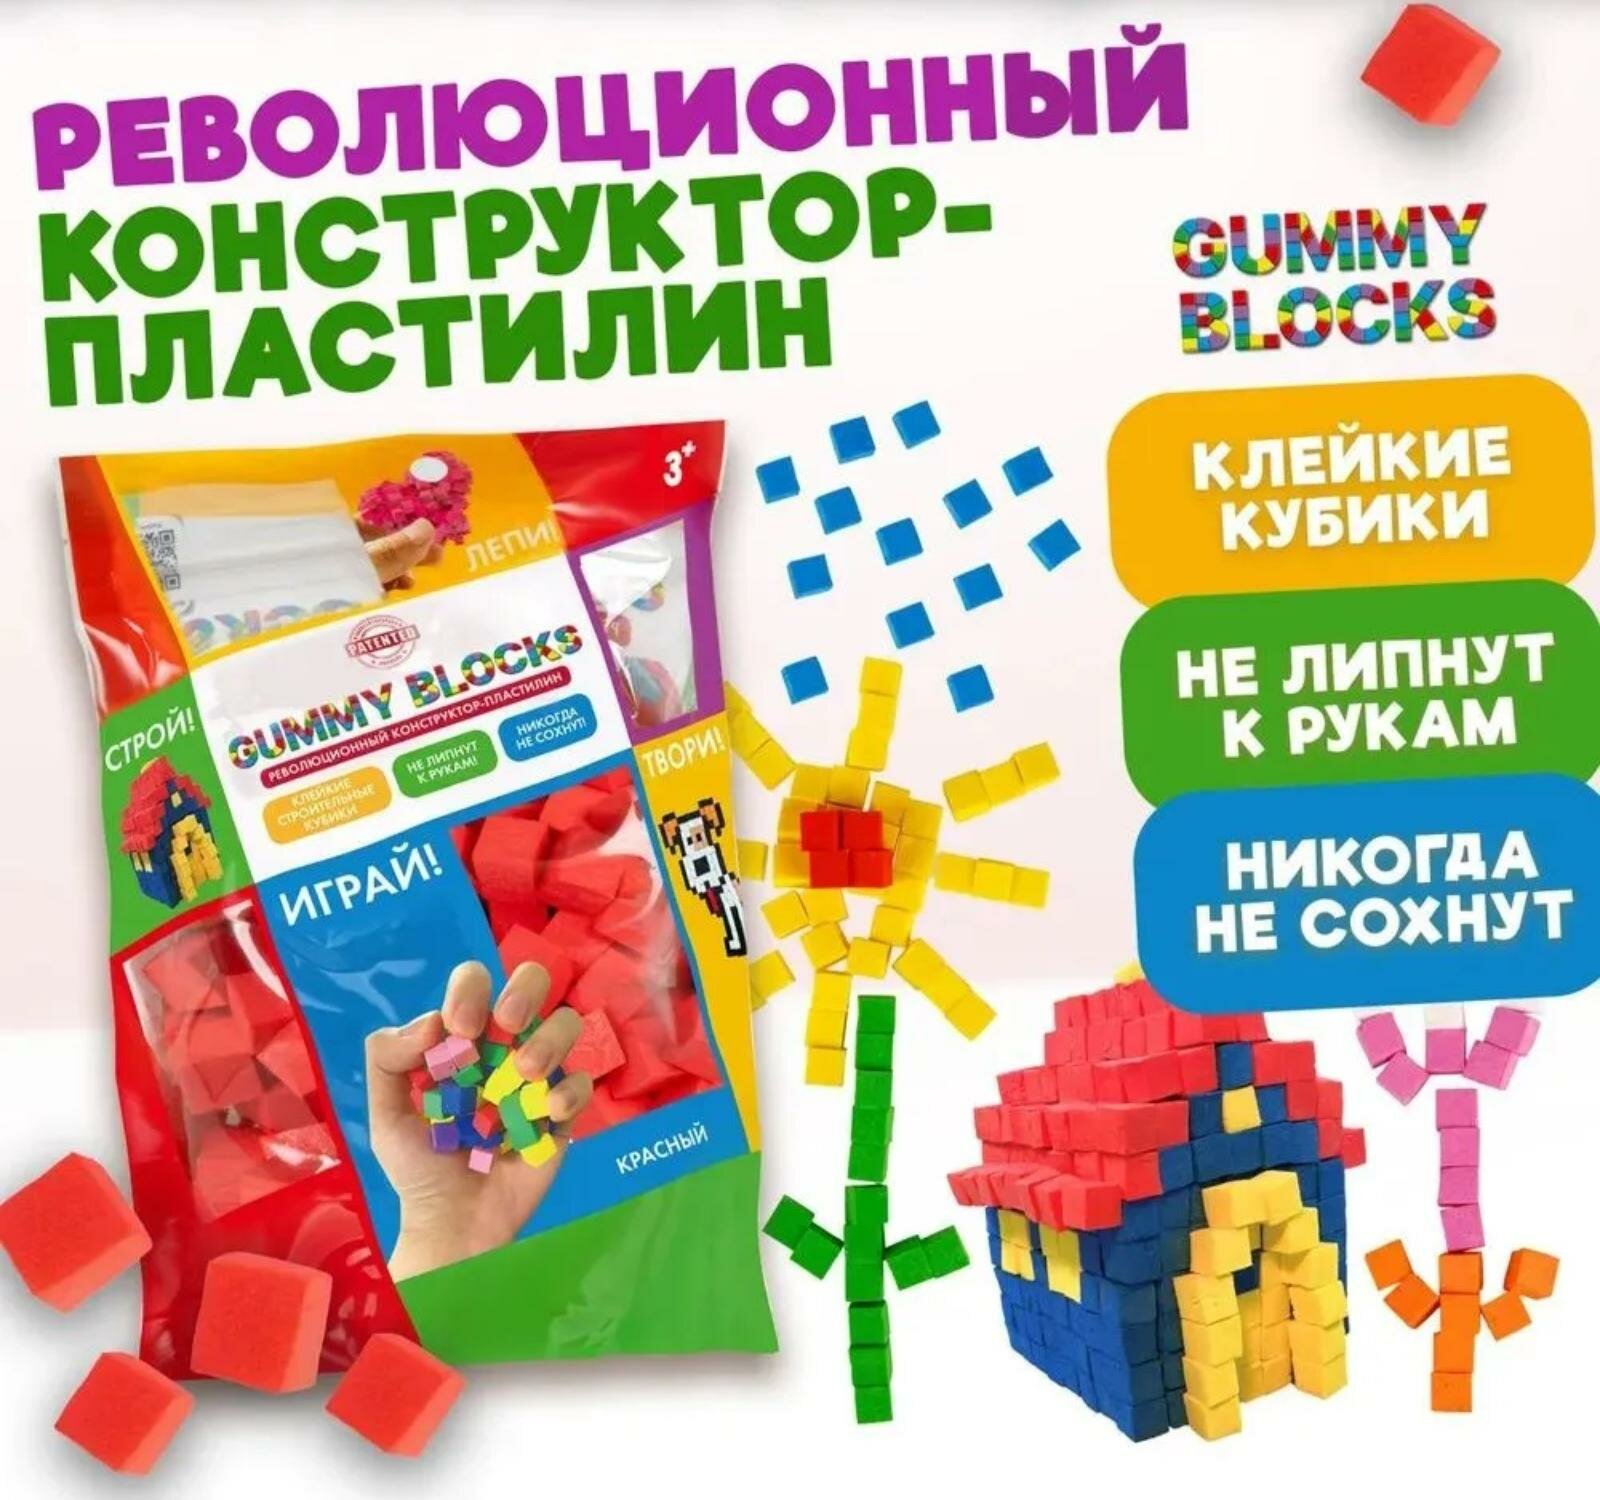 Конструктор-пластилин "Gummy Blocks" красный в zip-пак Т23939